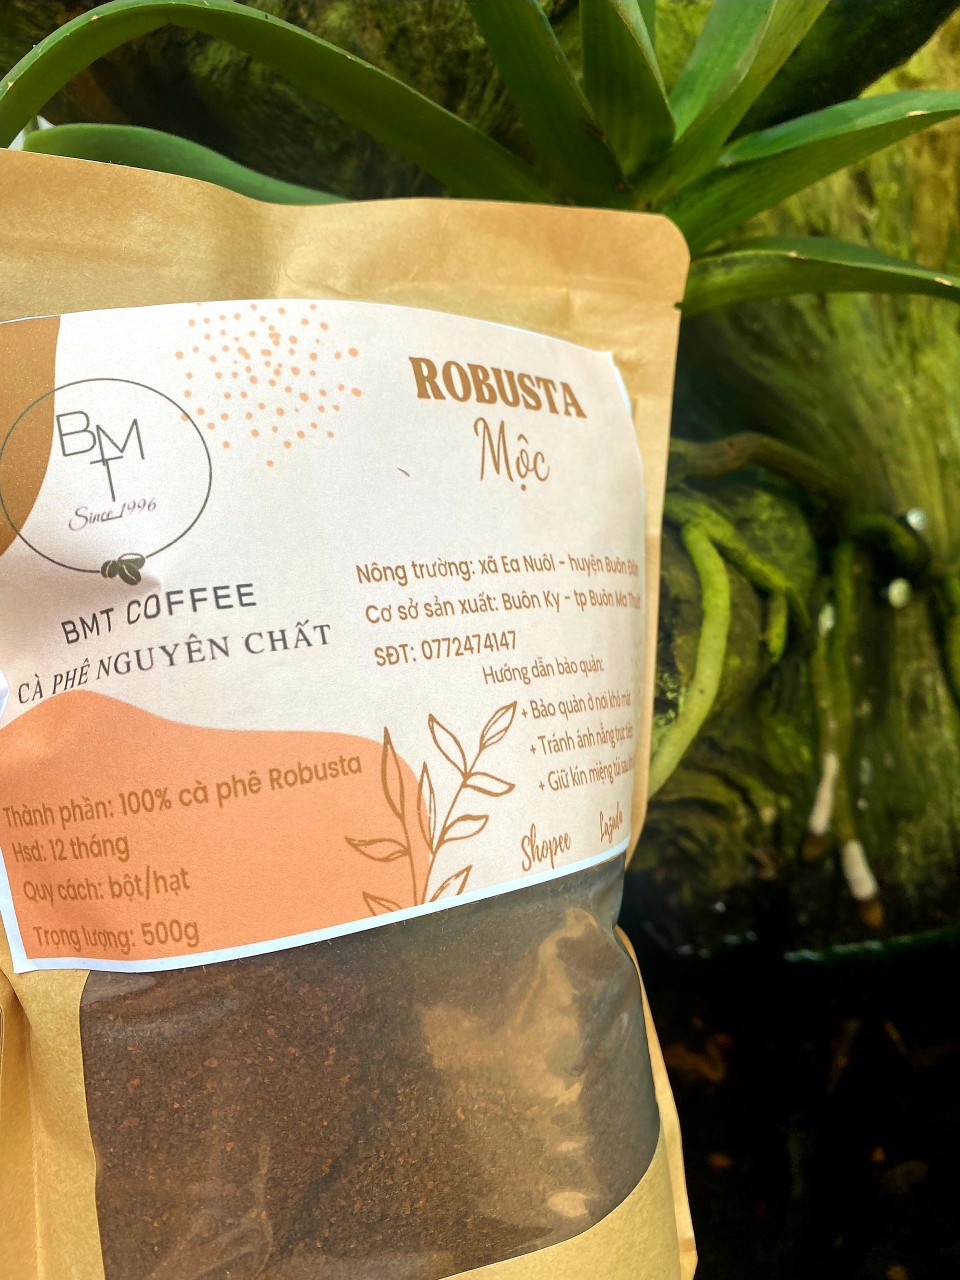 (1kg) Cà phê Robusta nguyên chất rang MỘC 100% - Robusta Buôn Ma Thuột cafe từ Đắk Lắk 1 kg